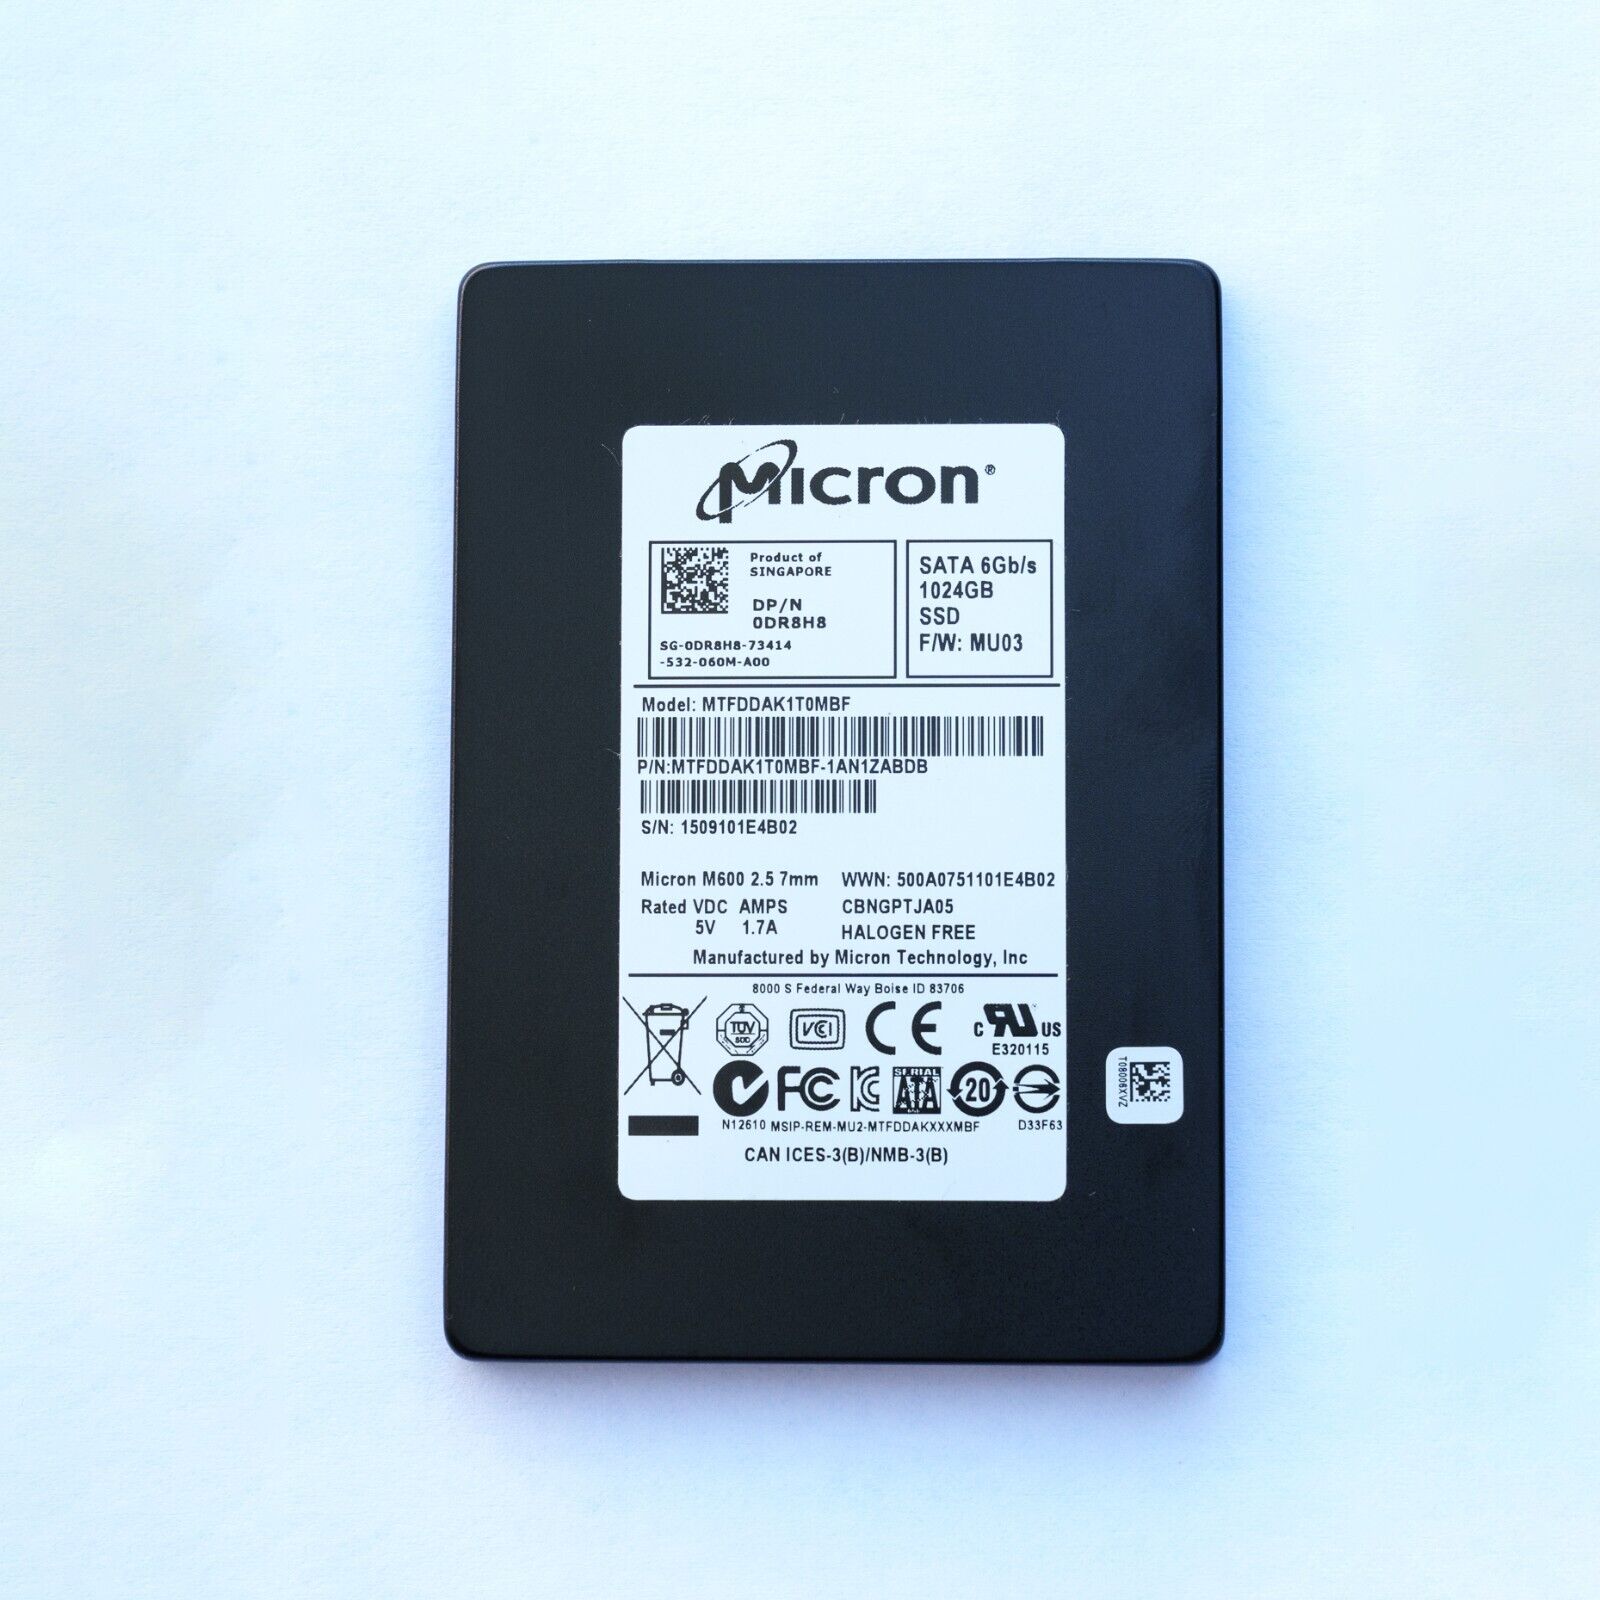 Micron MTFDDAK1T0MBF M600 1TB SSD 2.5-inch SATA SSD